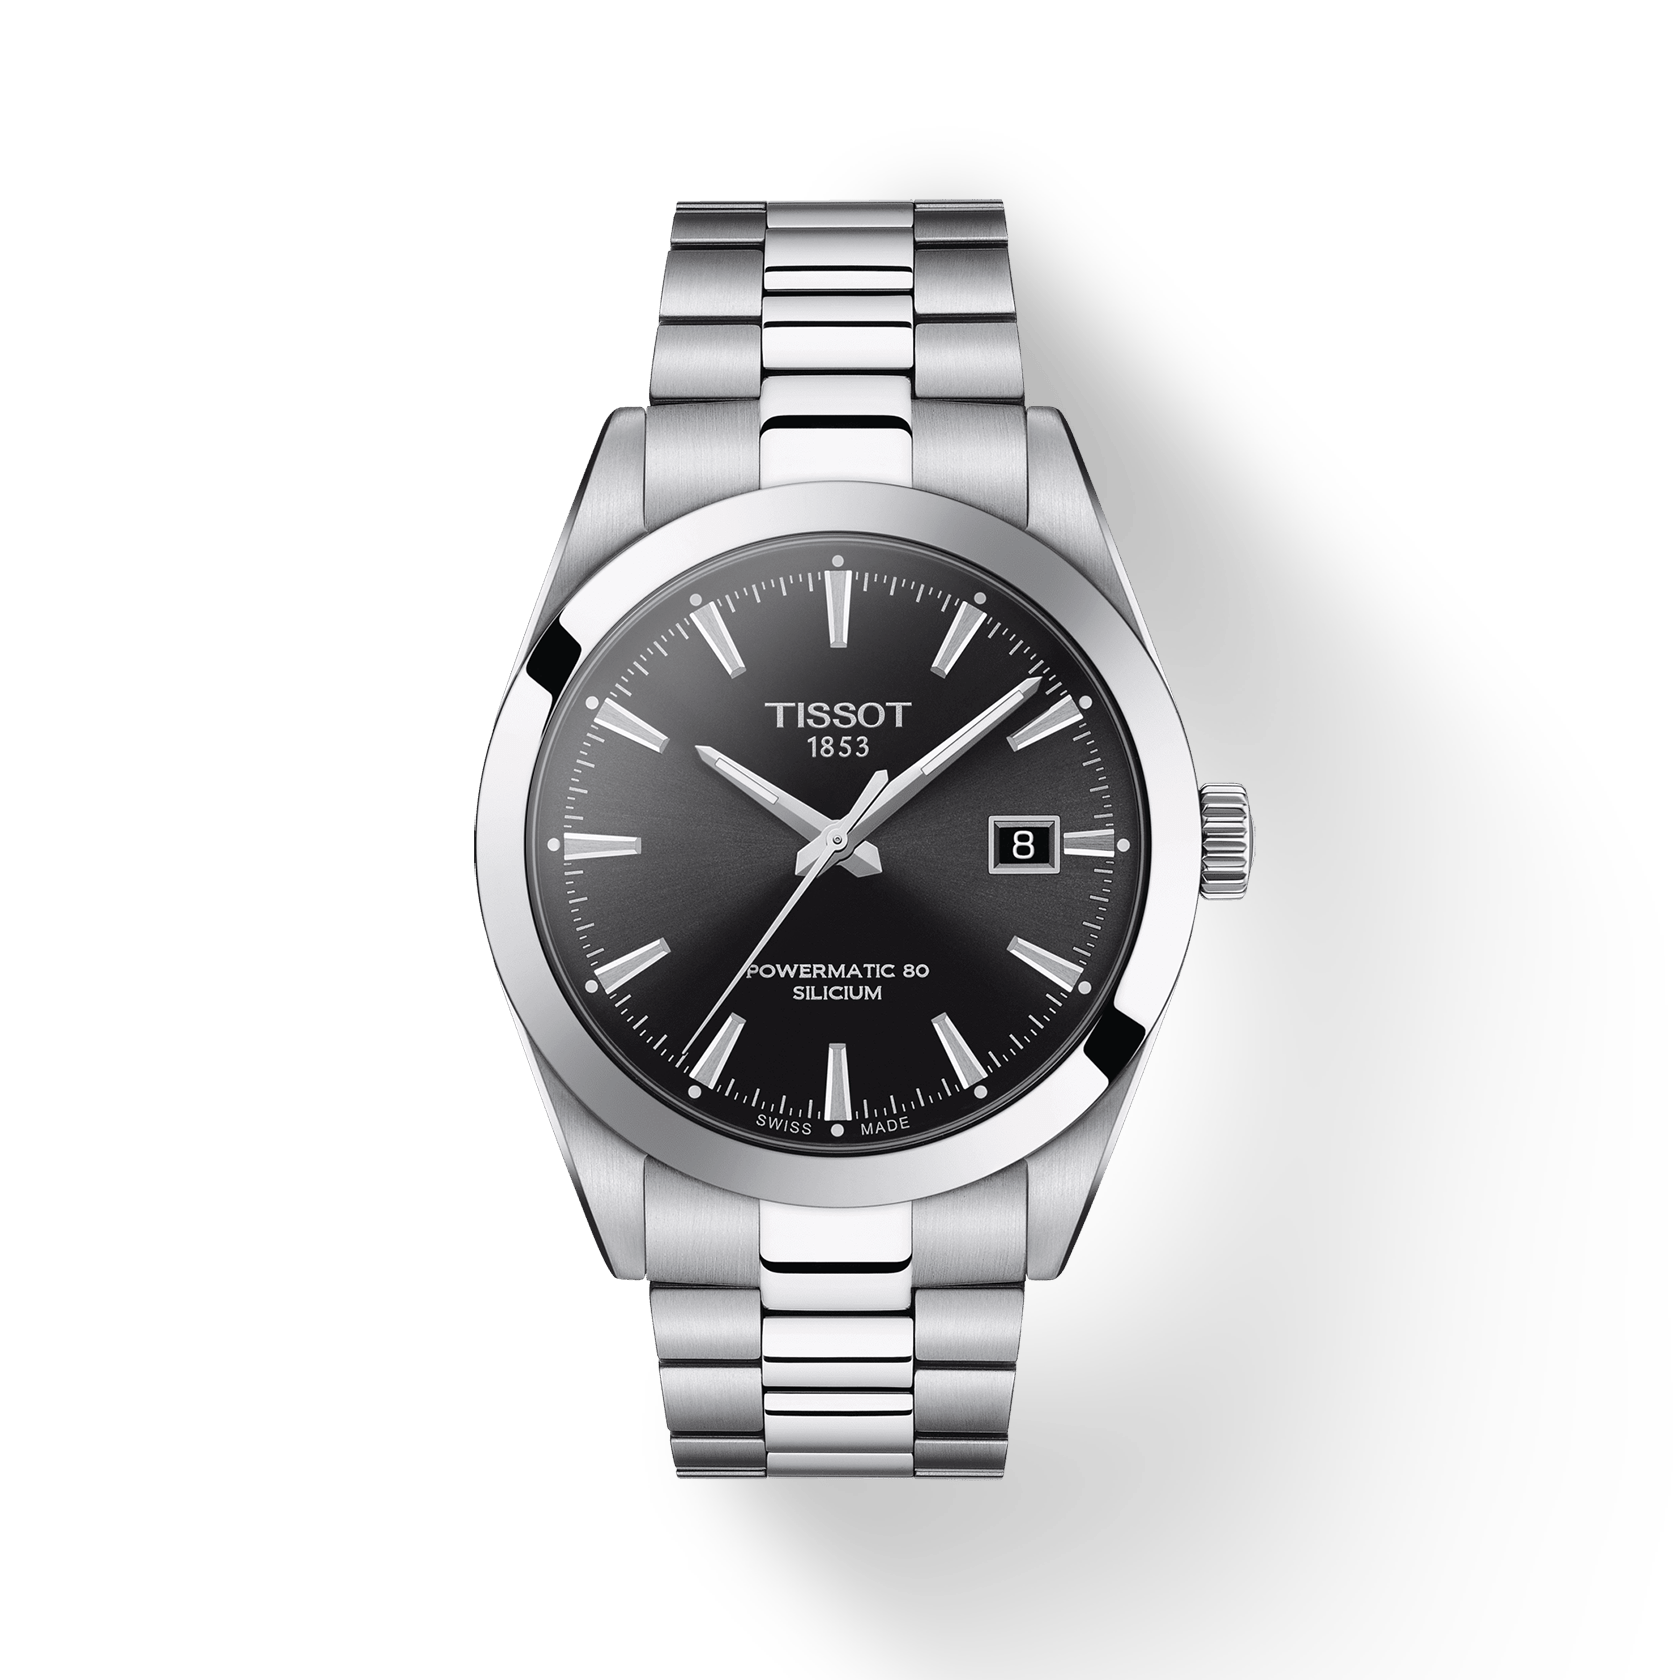 ティソ ジェントルマン オートマチック シリシウム - 腕時計(アナログ)